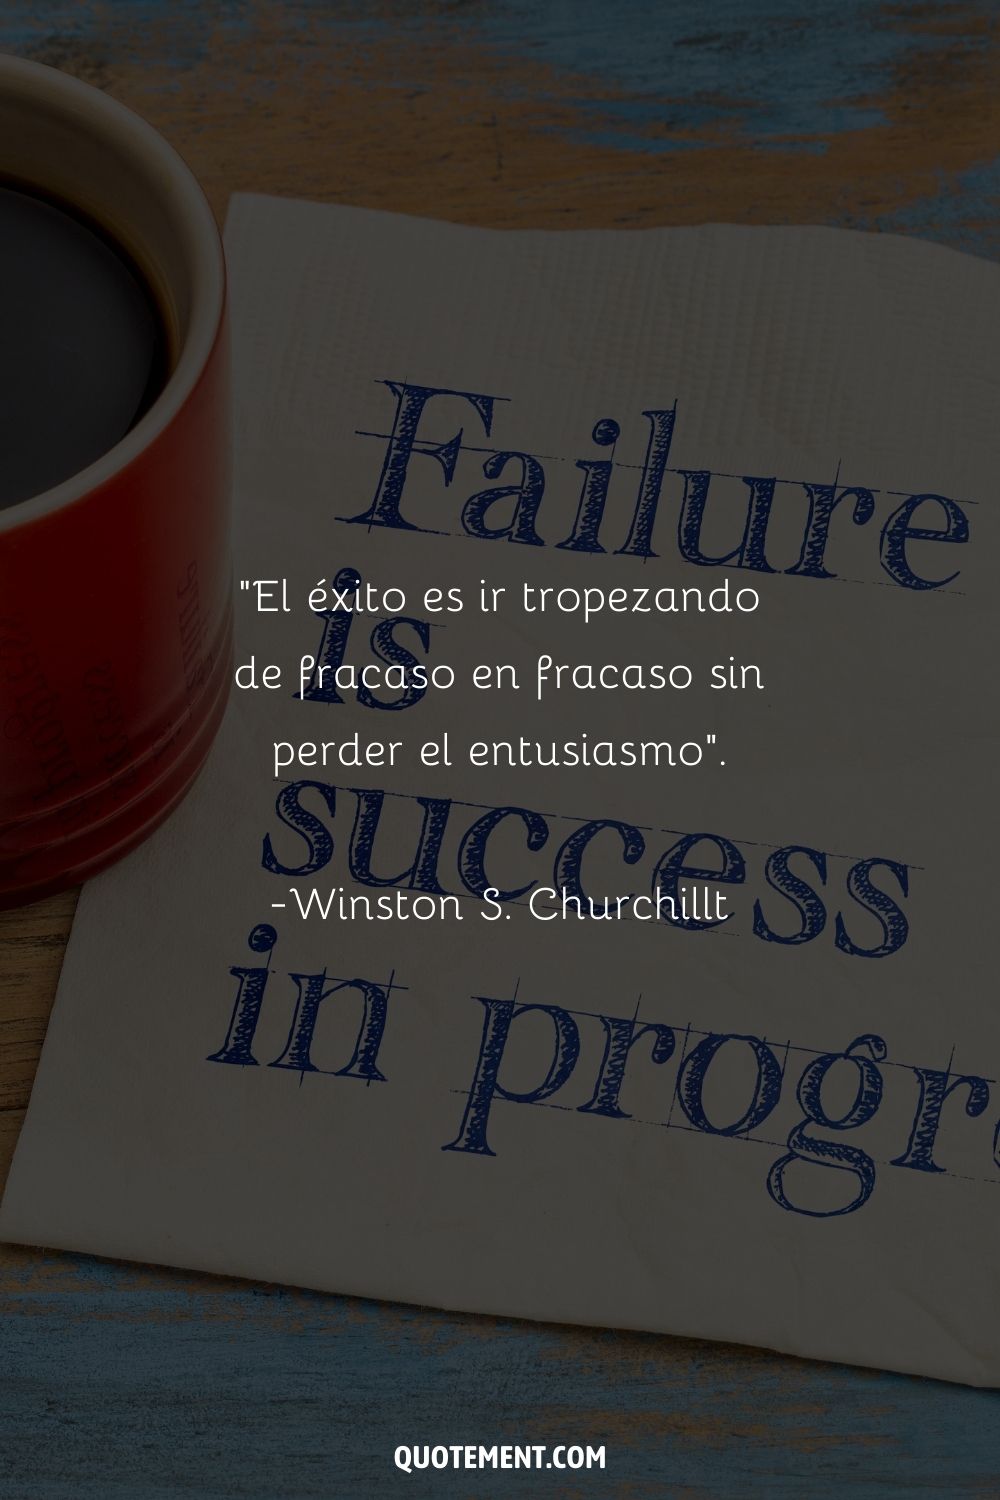 "El éxito es ir tropezando de fracaso en fracaso sin perder el entusiasmo". - Winston S. Churchill